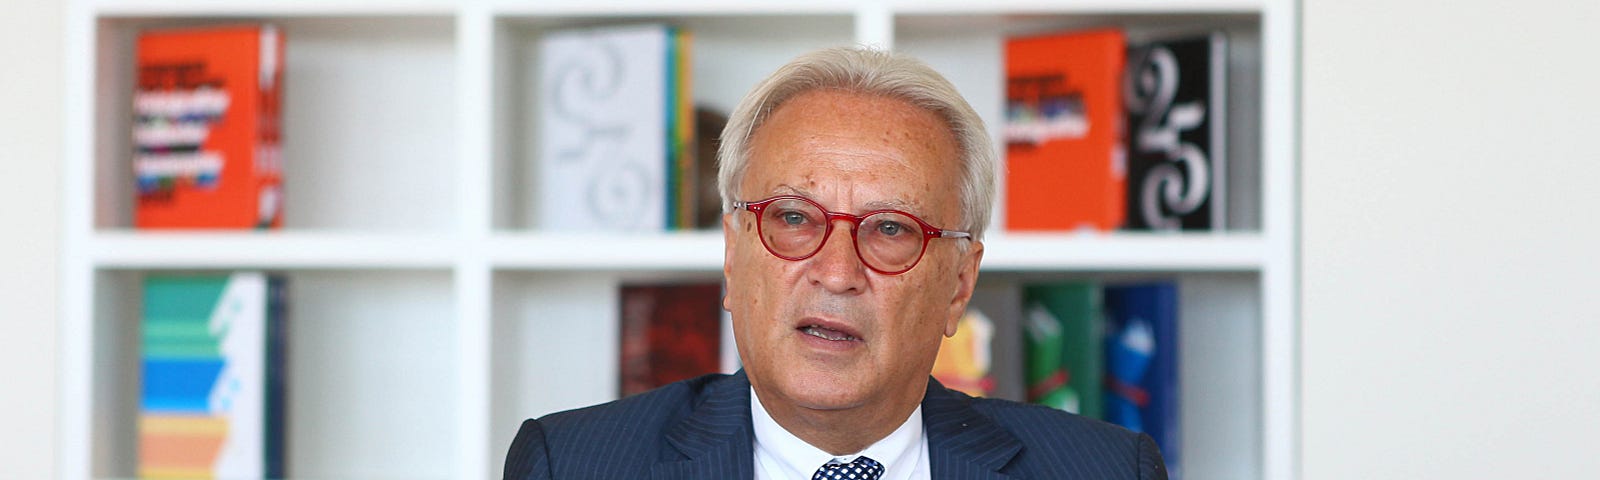 Press picture of Hannes Swoboda.